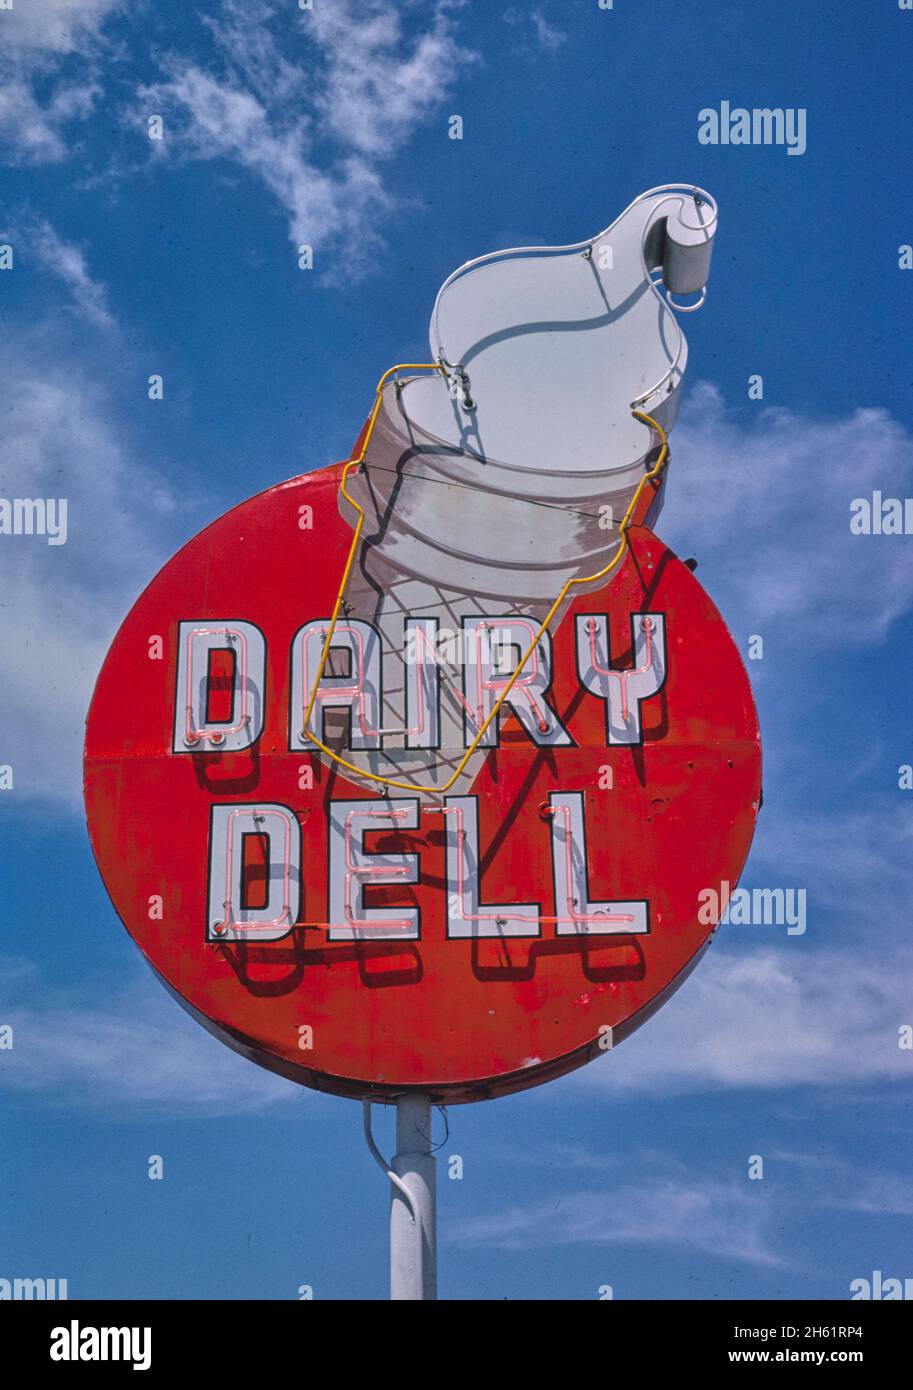 Dairy Dell ice cream sign, Rt30, Nampa, Idaho; ca. 1980 Stock Photo